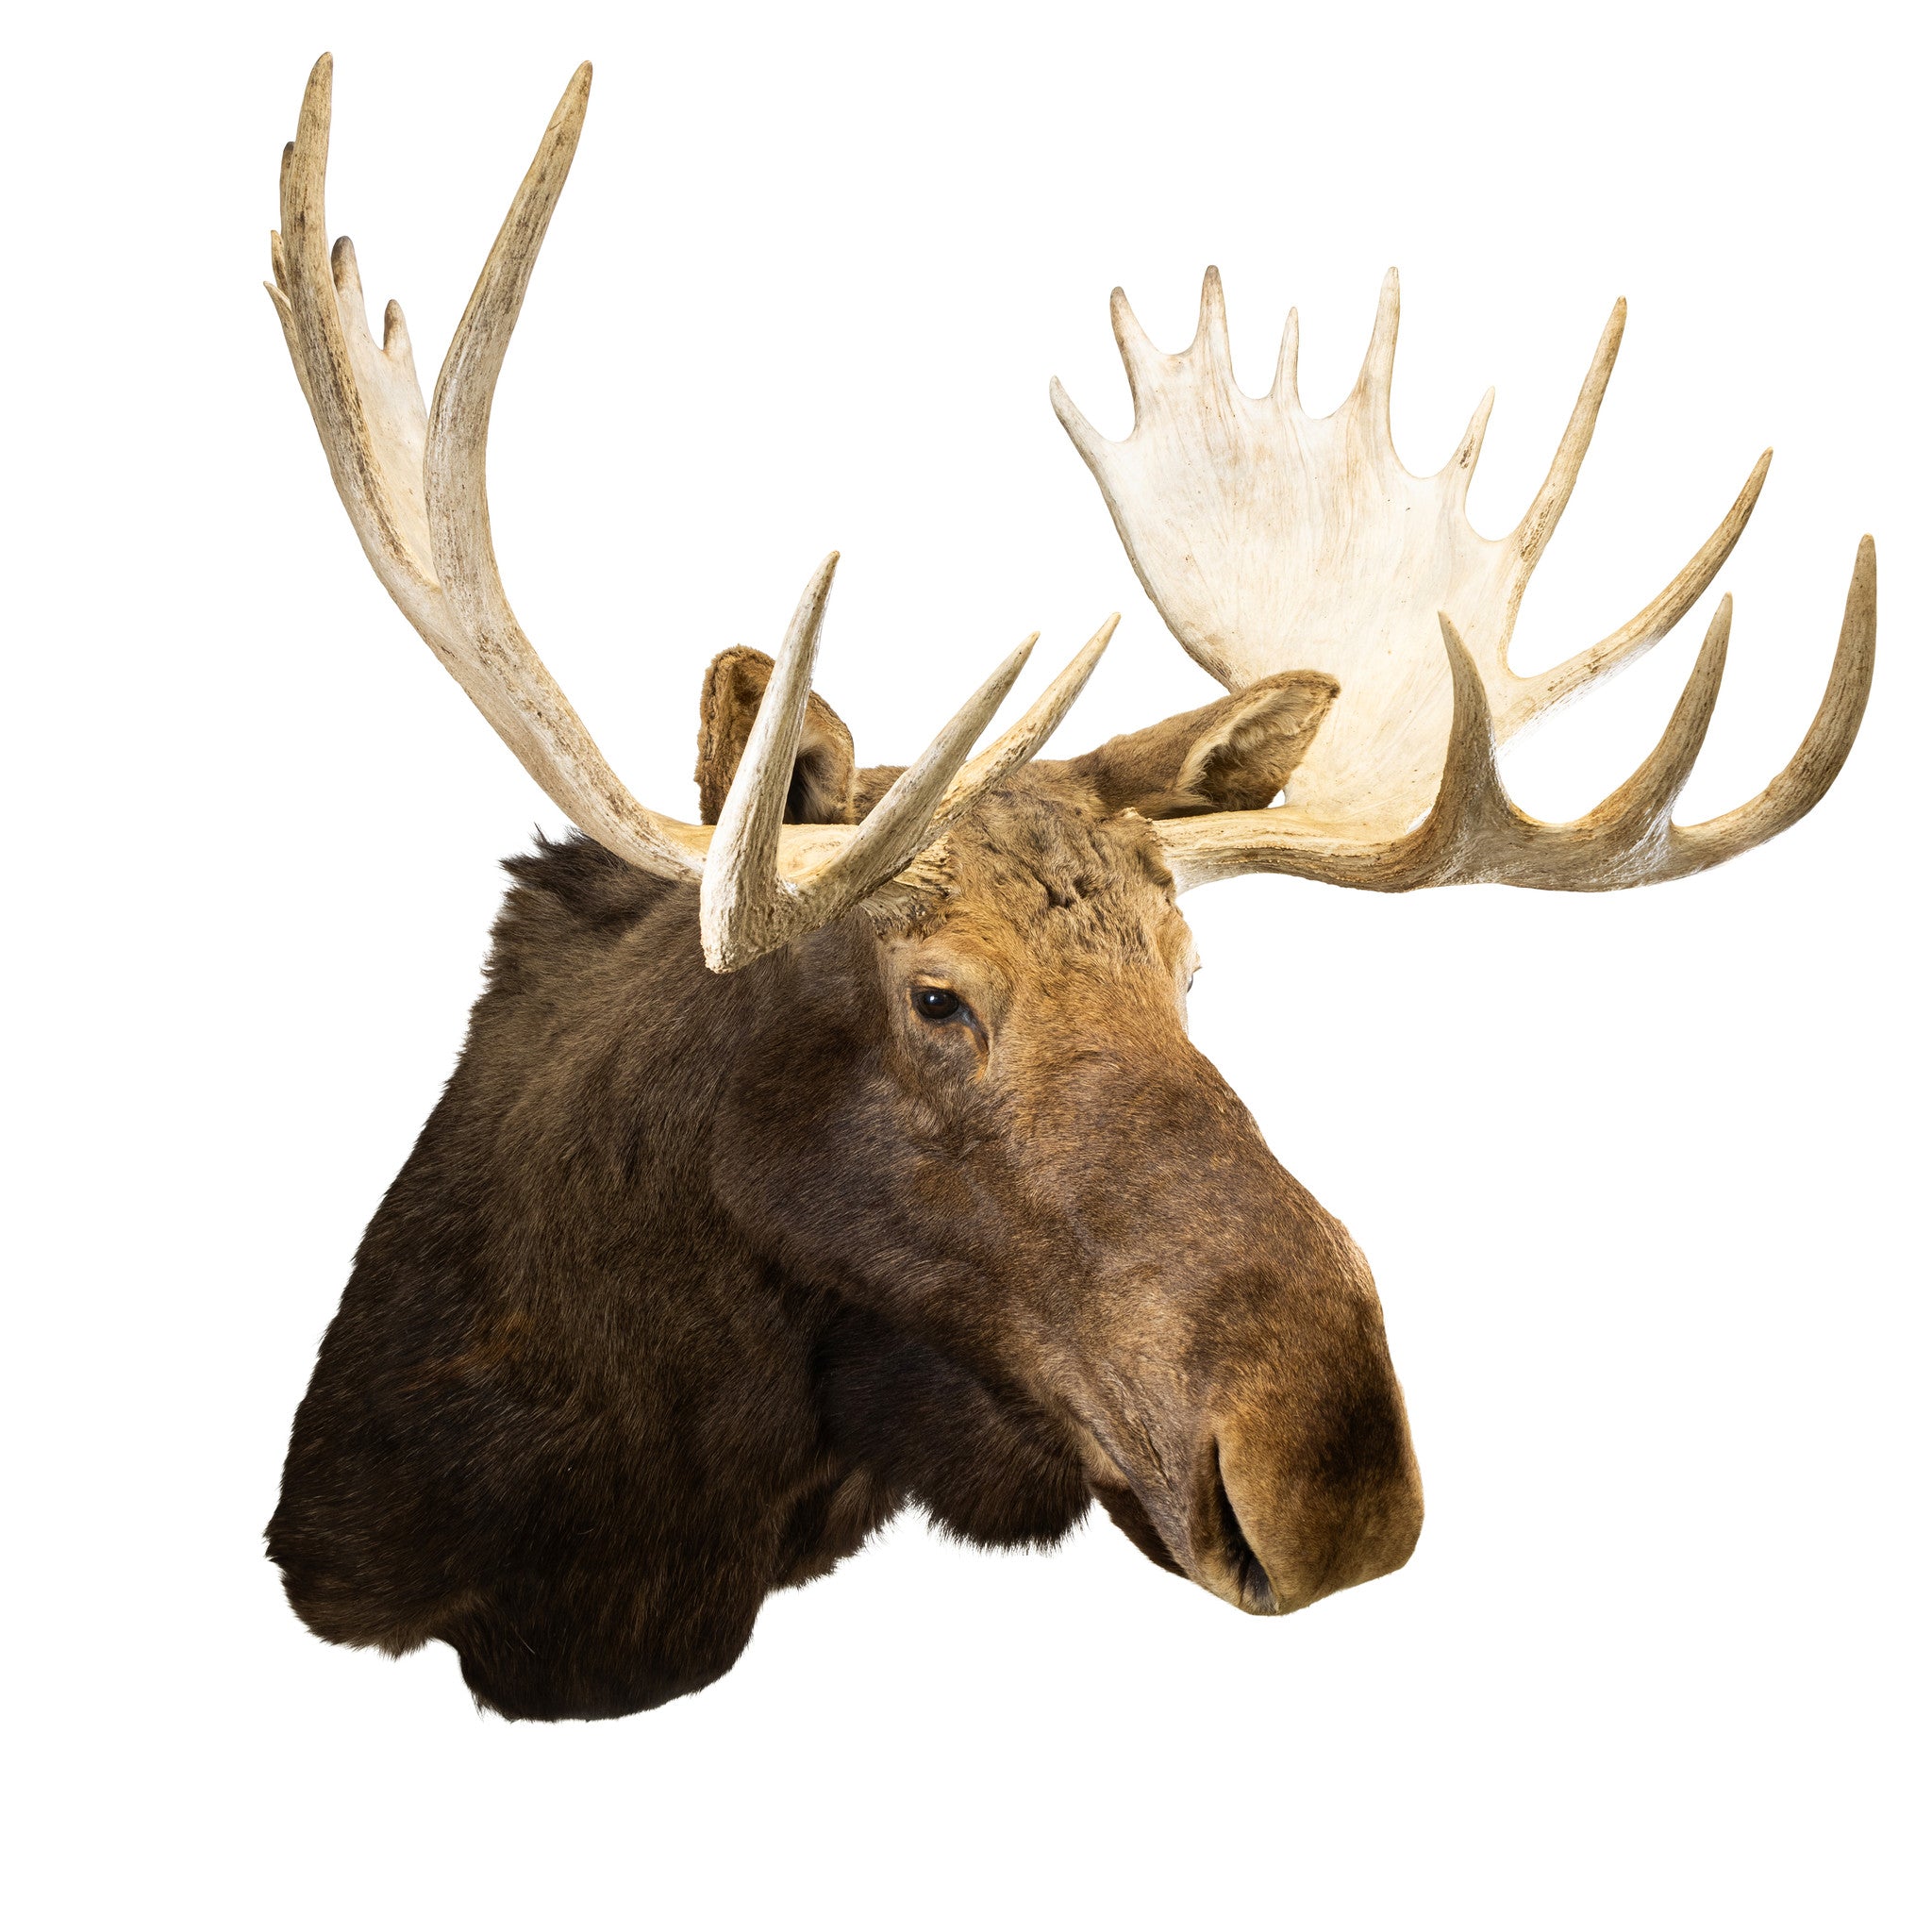 Yukon Moose